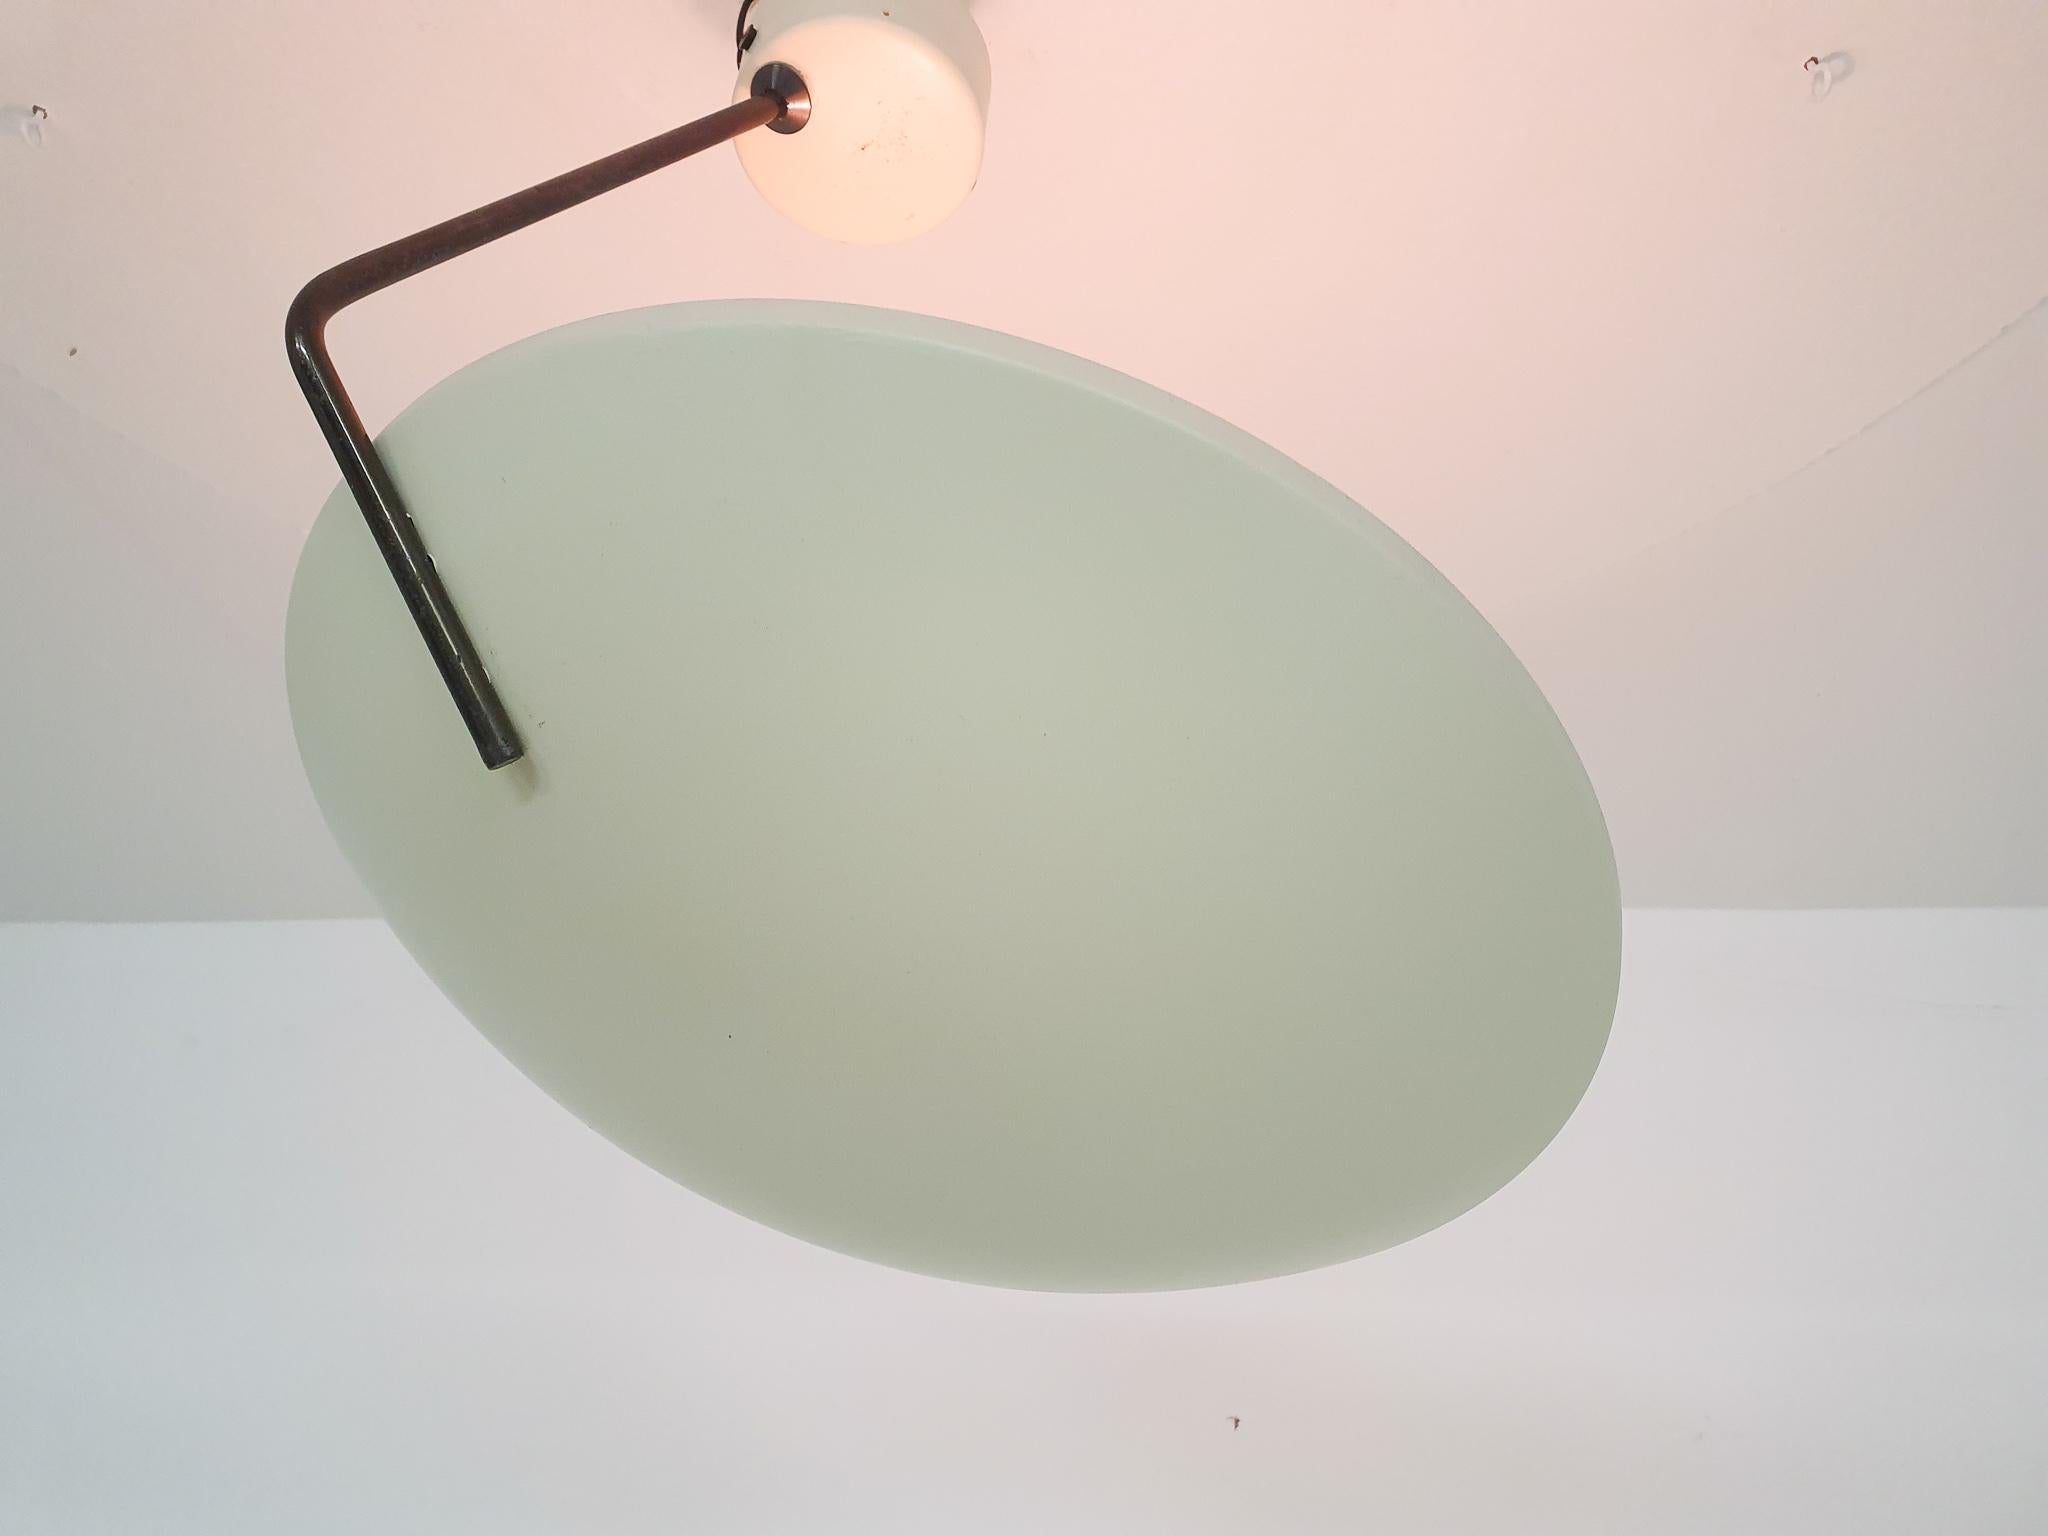 20th Century Bruno Gatta for Stilnovo wall or ceiling light, model 232, Italy 1950's